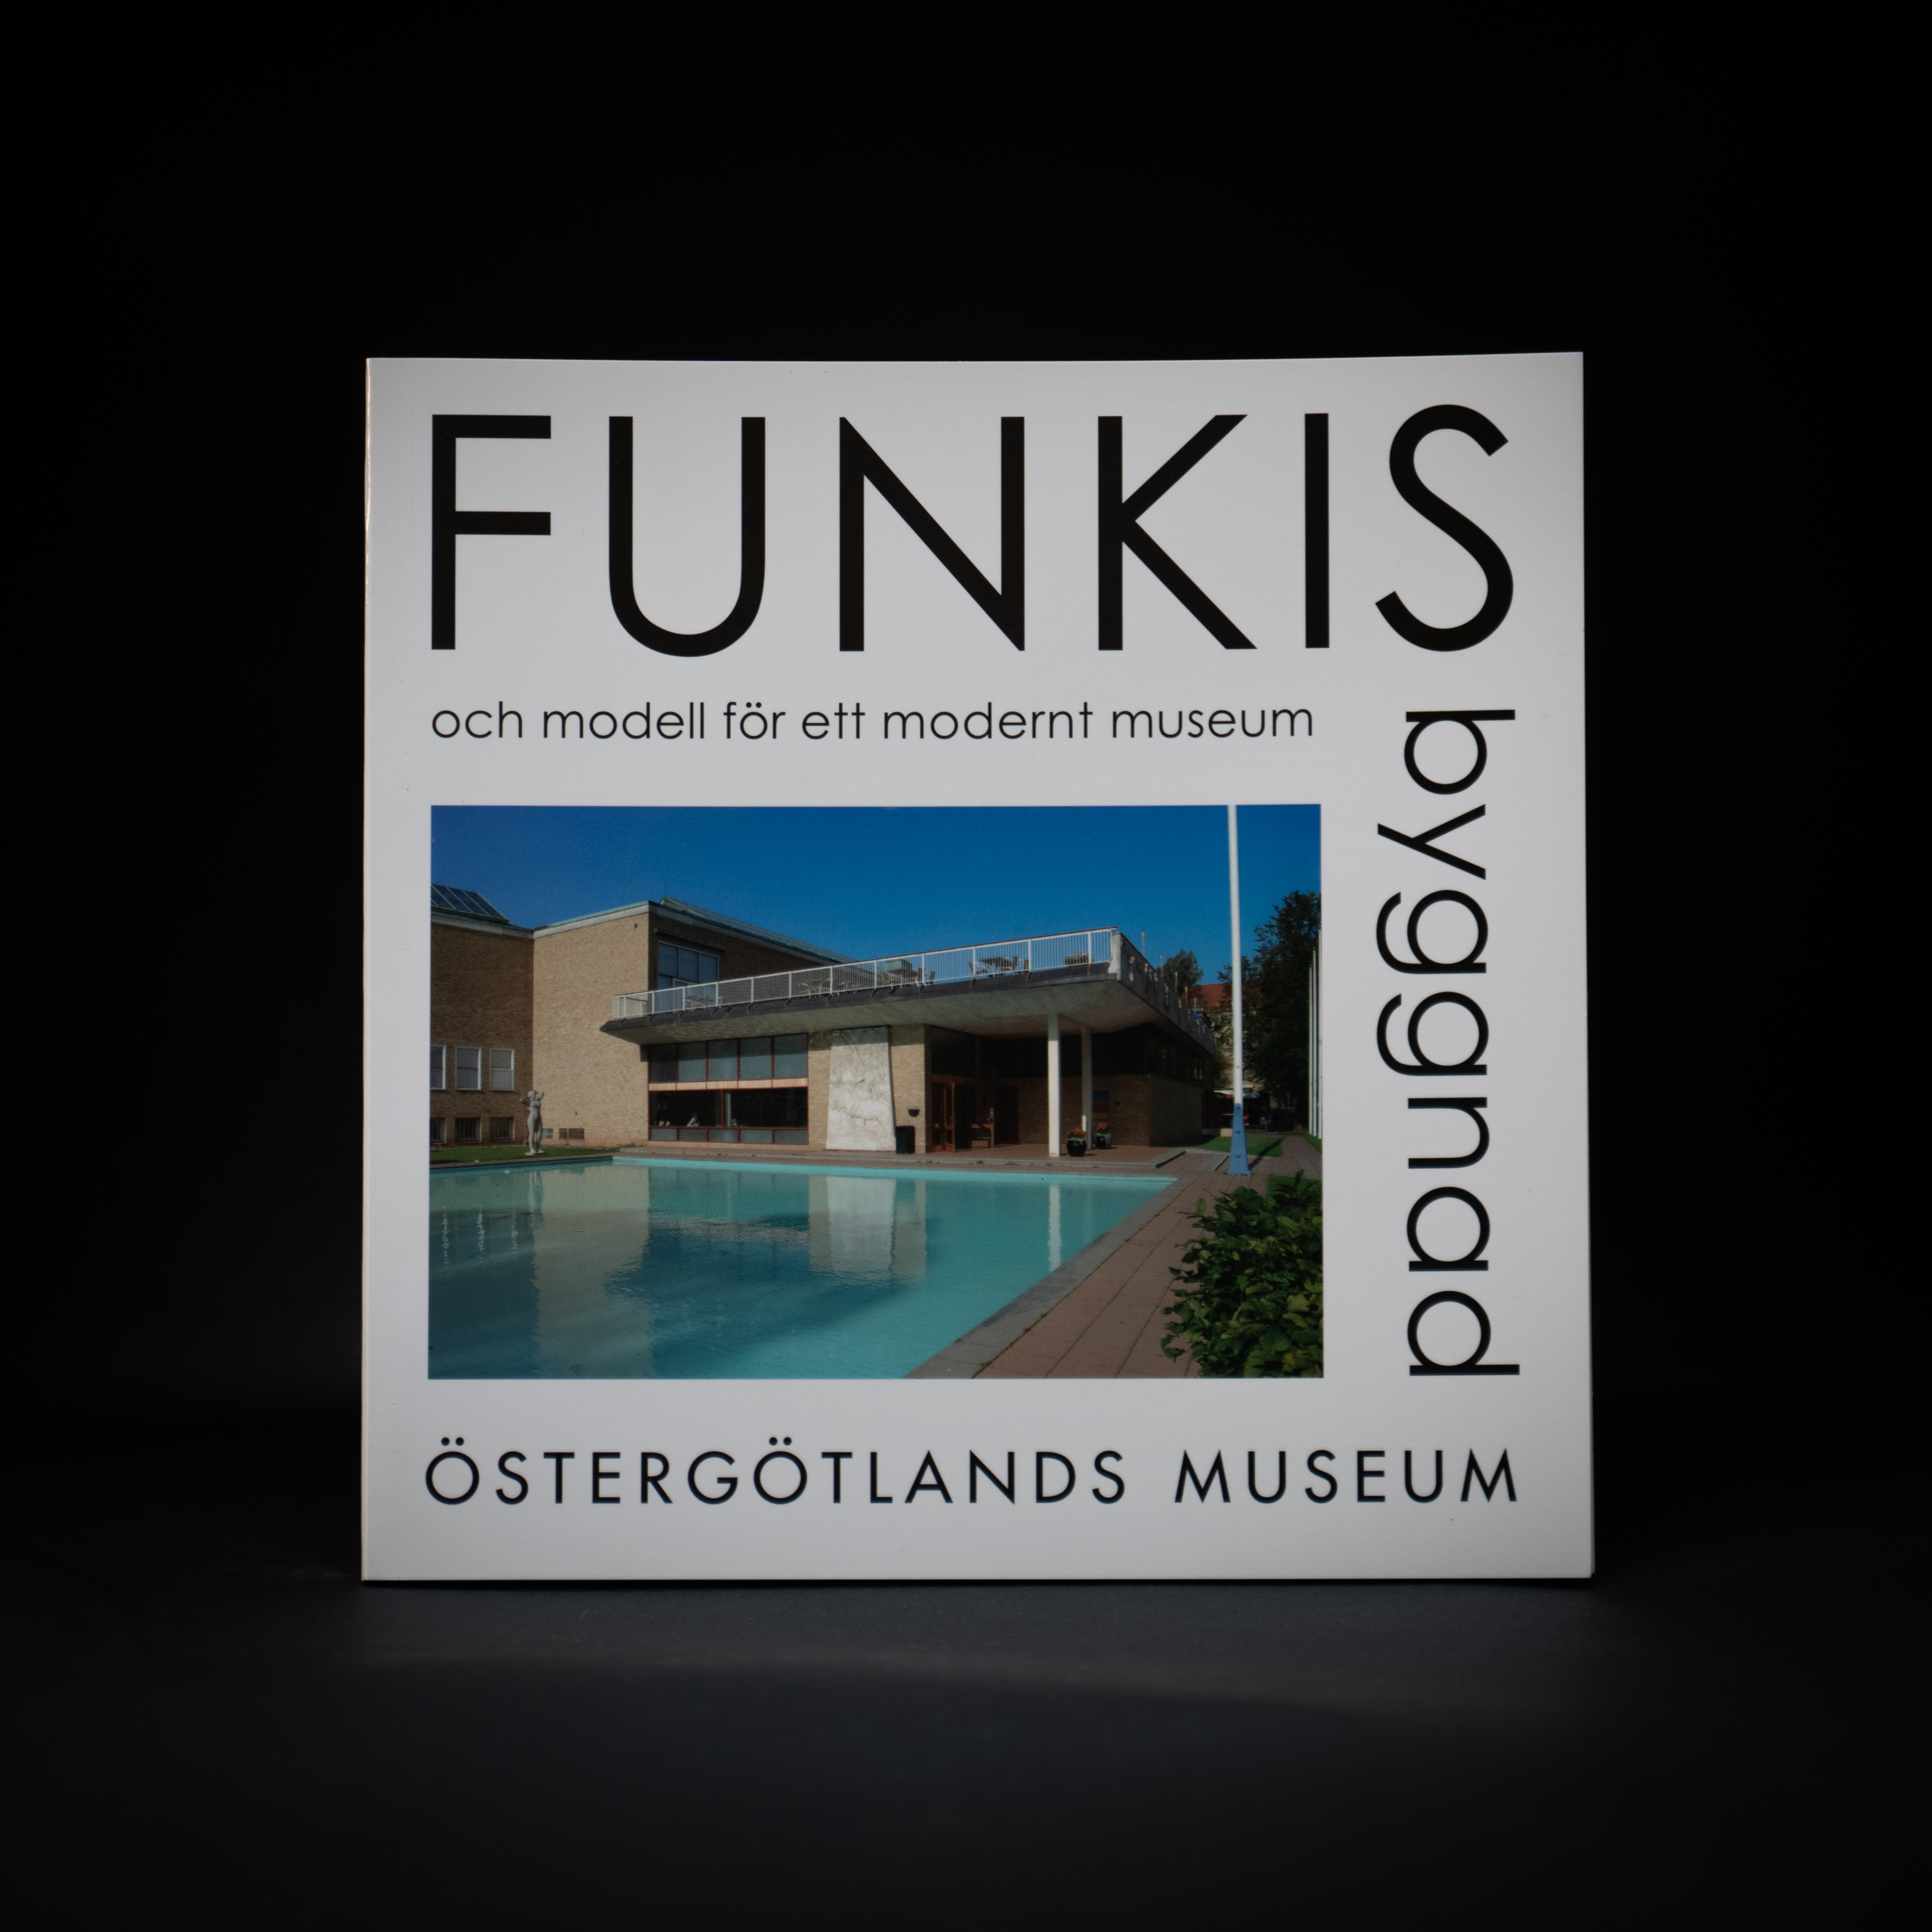 Funkis byggnad och modell för ett modernt museum - Östergötlands museum